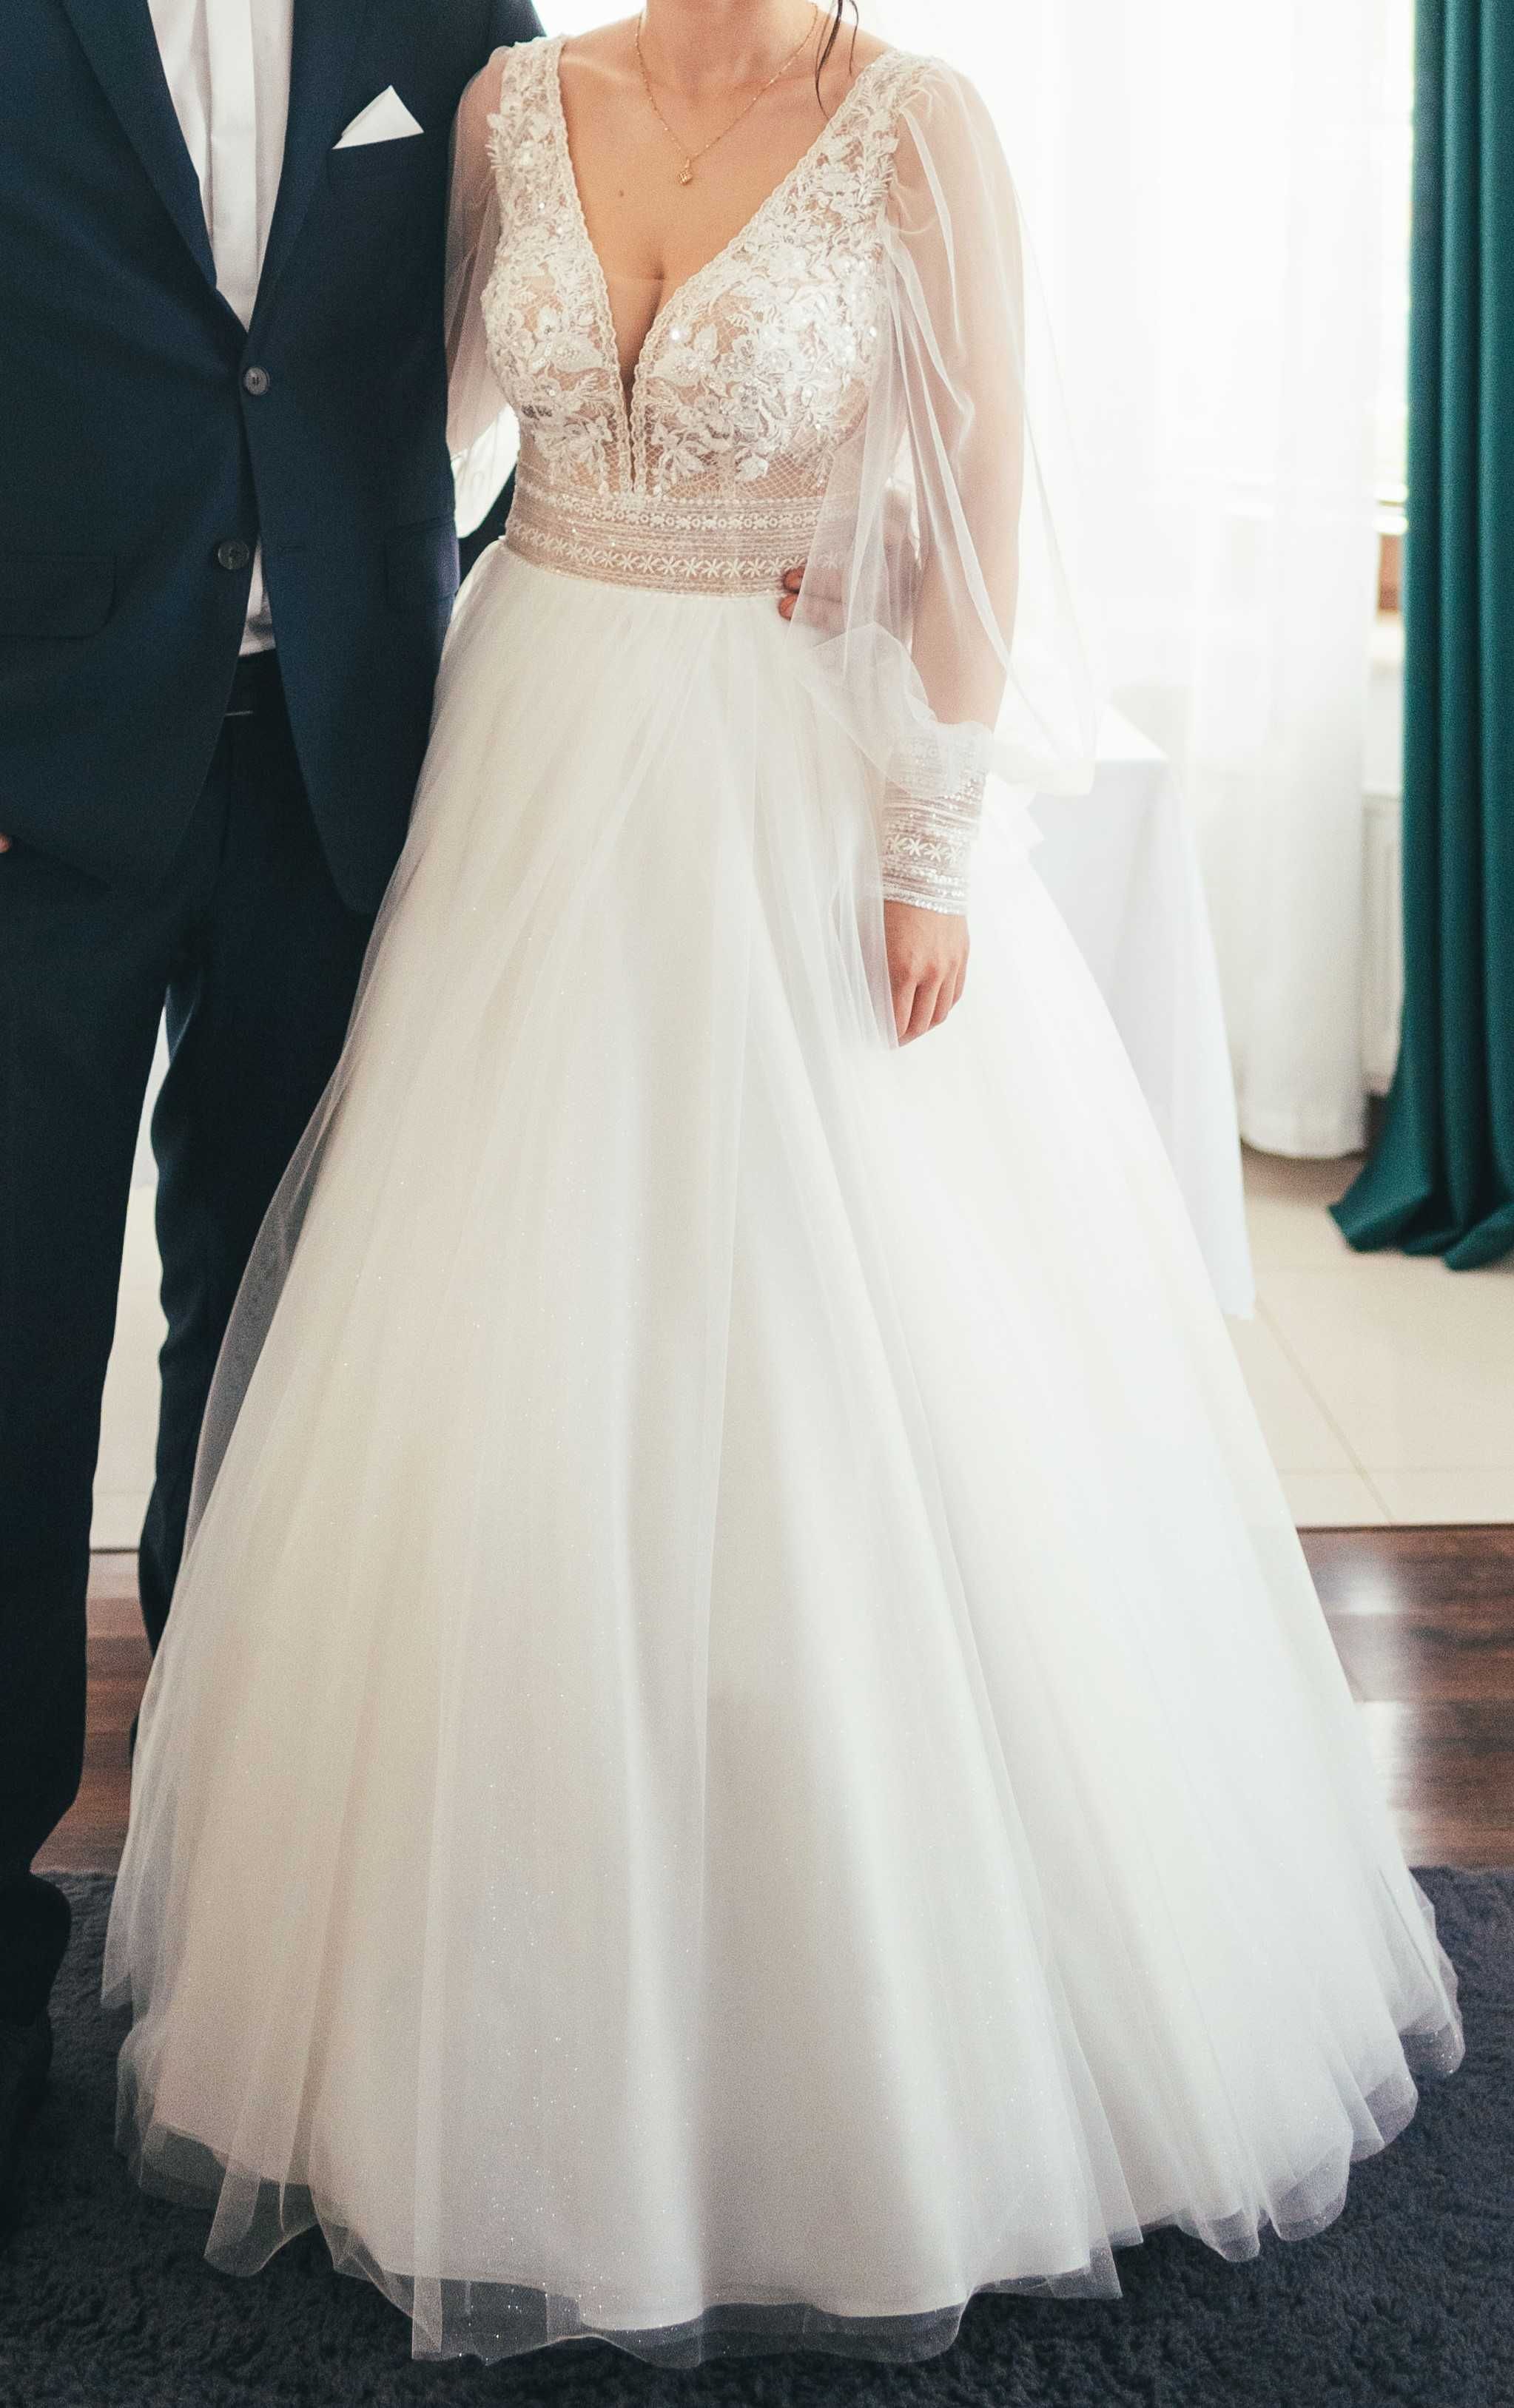 Piękna i wyjątkowa suknia ślubna z odpinanymi rękawami